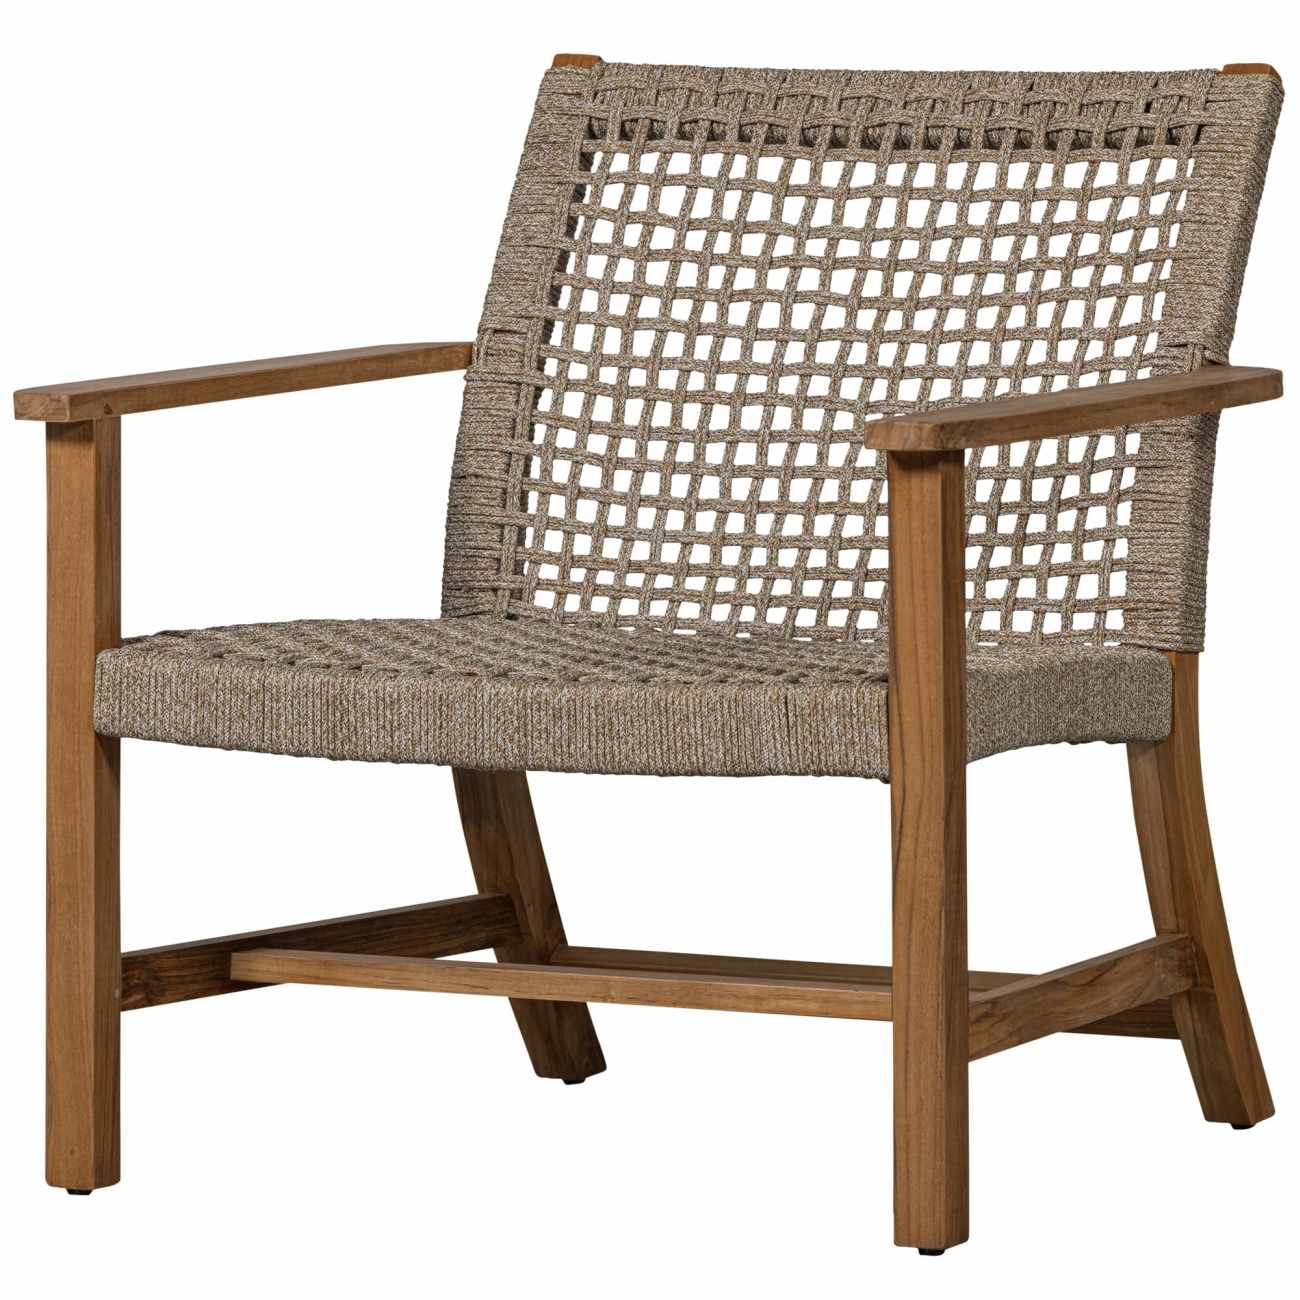 Der Gartensessel Copper überzeugt mit seinem modernen Design. Gefertigt wurde er aus Geflecht, welches einen natürlichen Farbton besitzt. Das Gestell ist aus Teakholz und hat eine natürliche Farbe. Der Sessel besitzt eine Sitzhöhe von 38 cm.